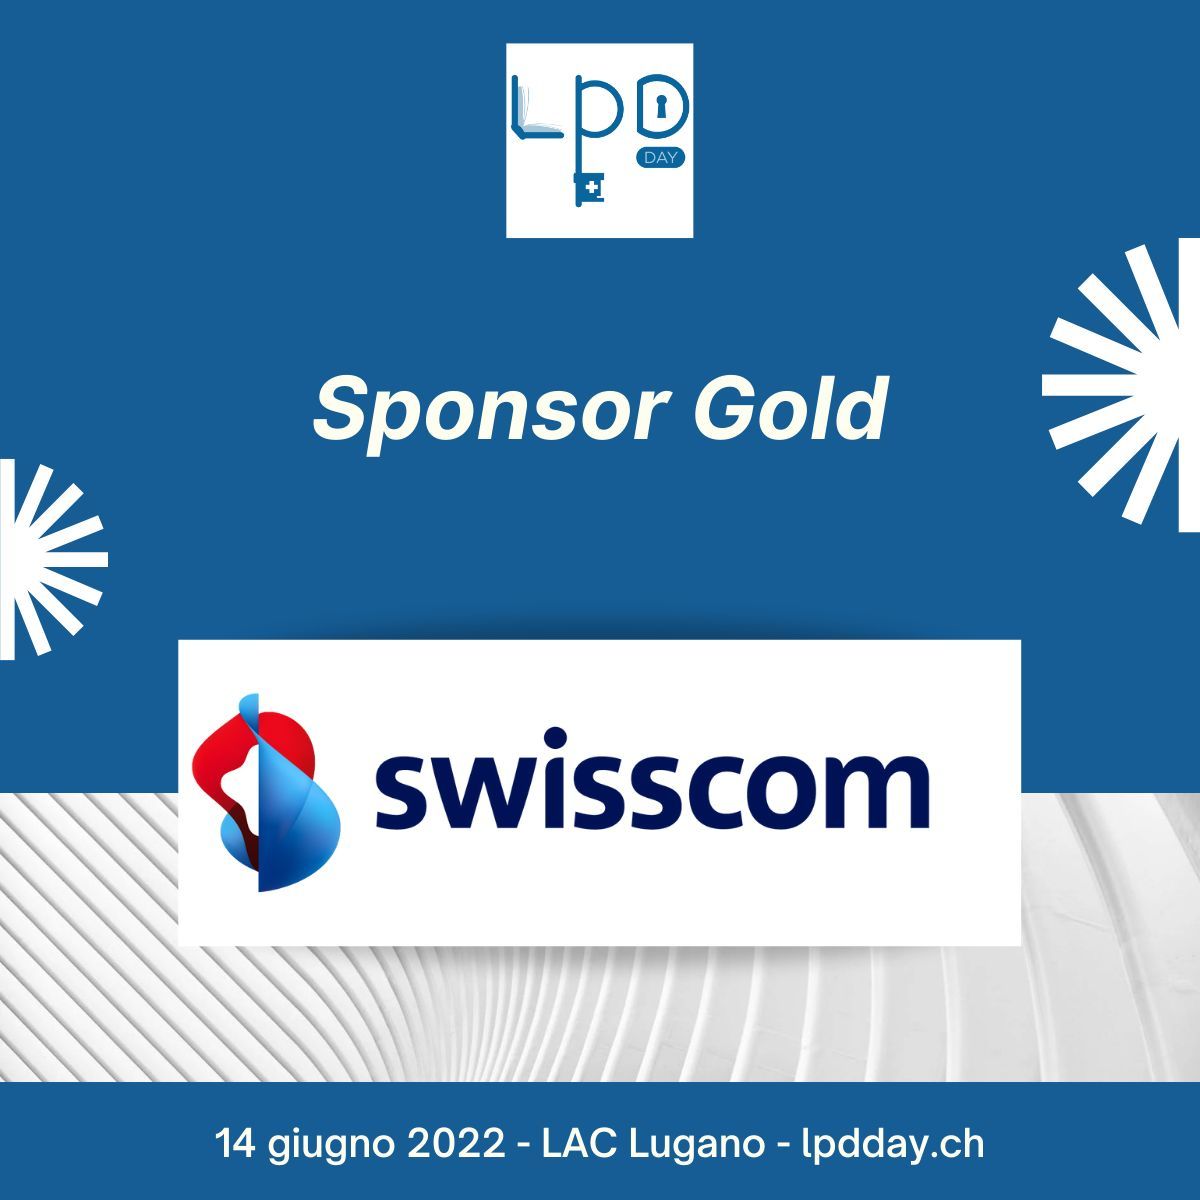 Swisscomi kuulutus esimese LPD päeva "kuldsponsoriks".